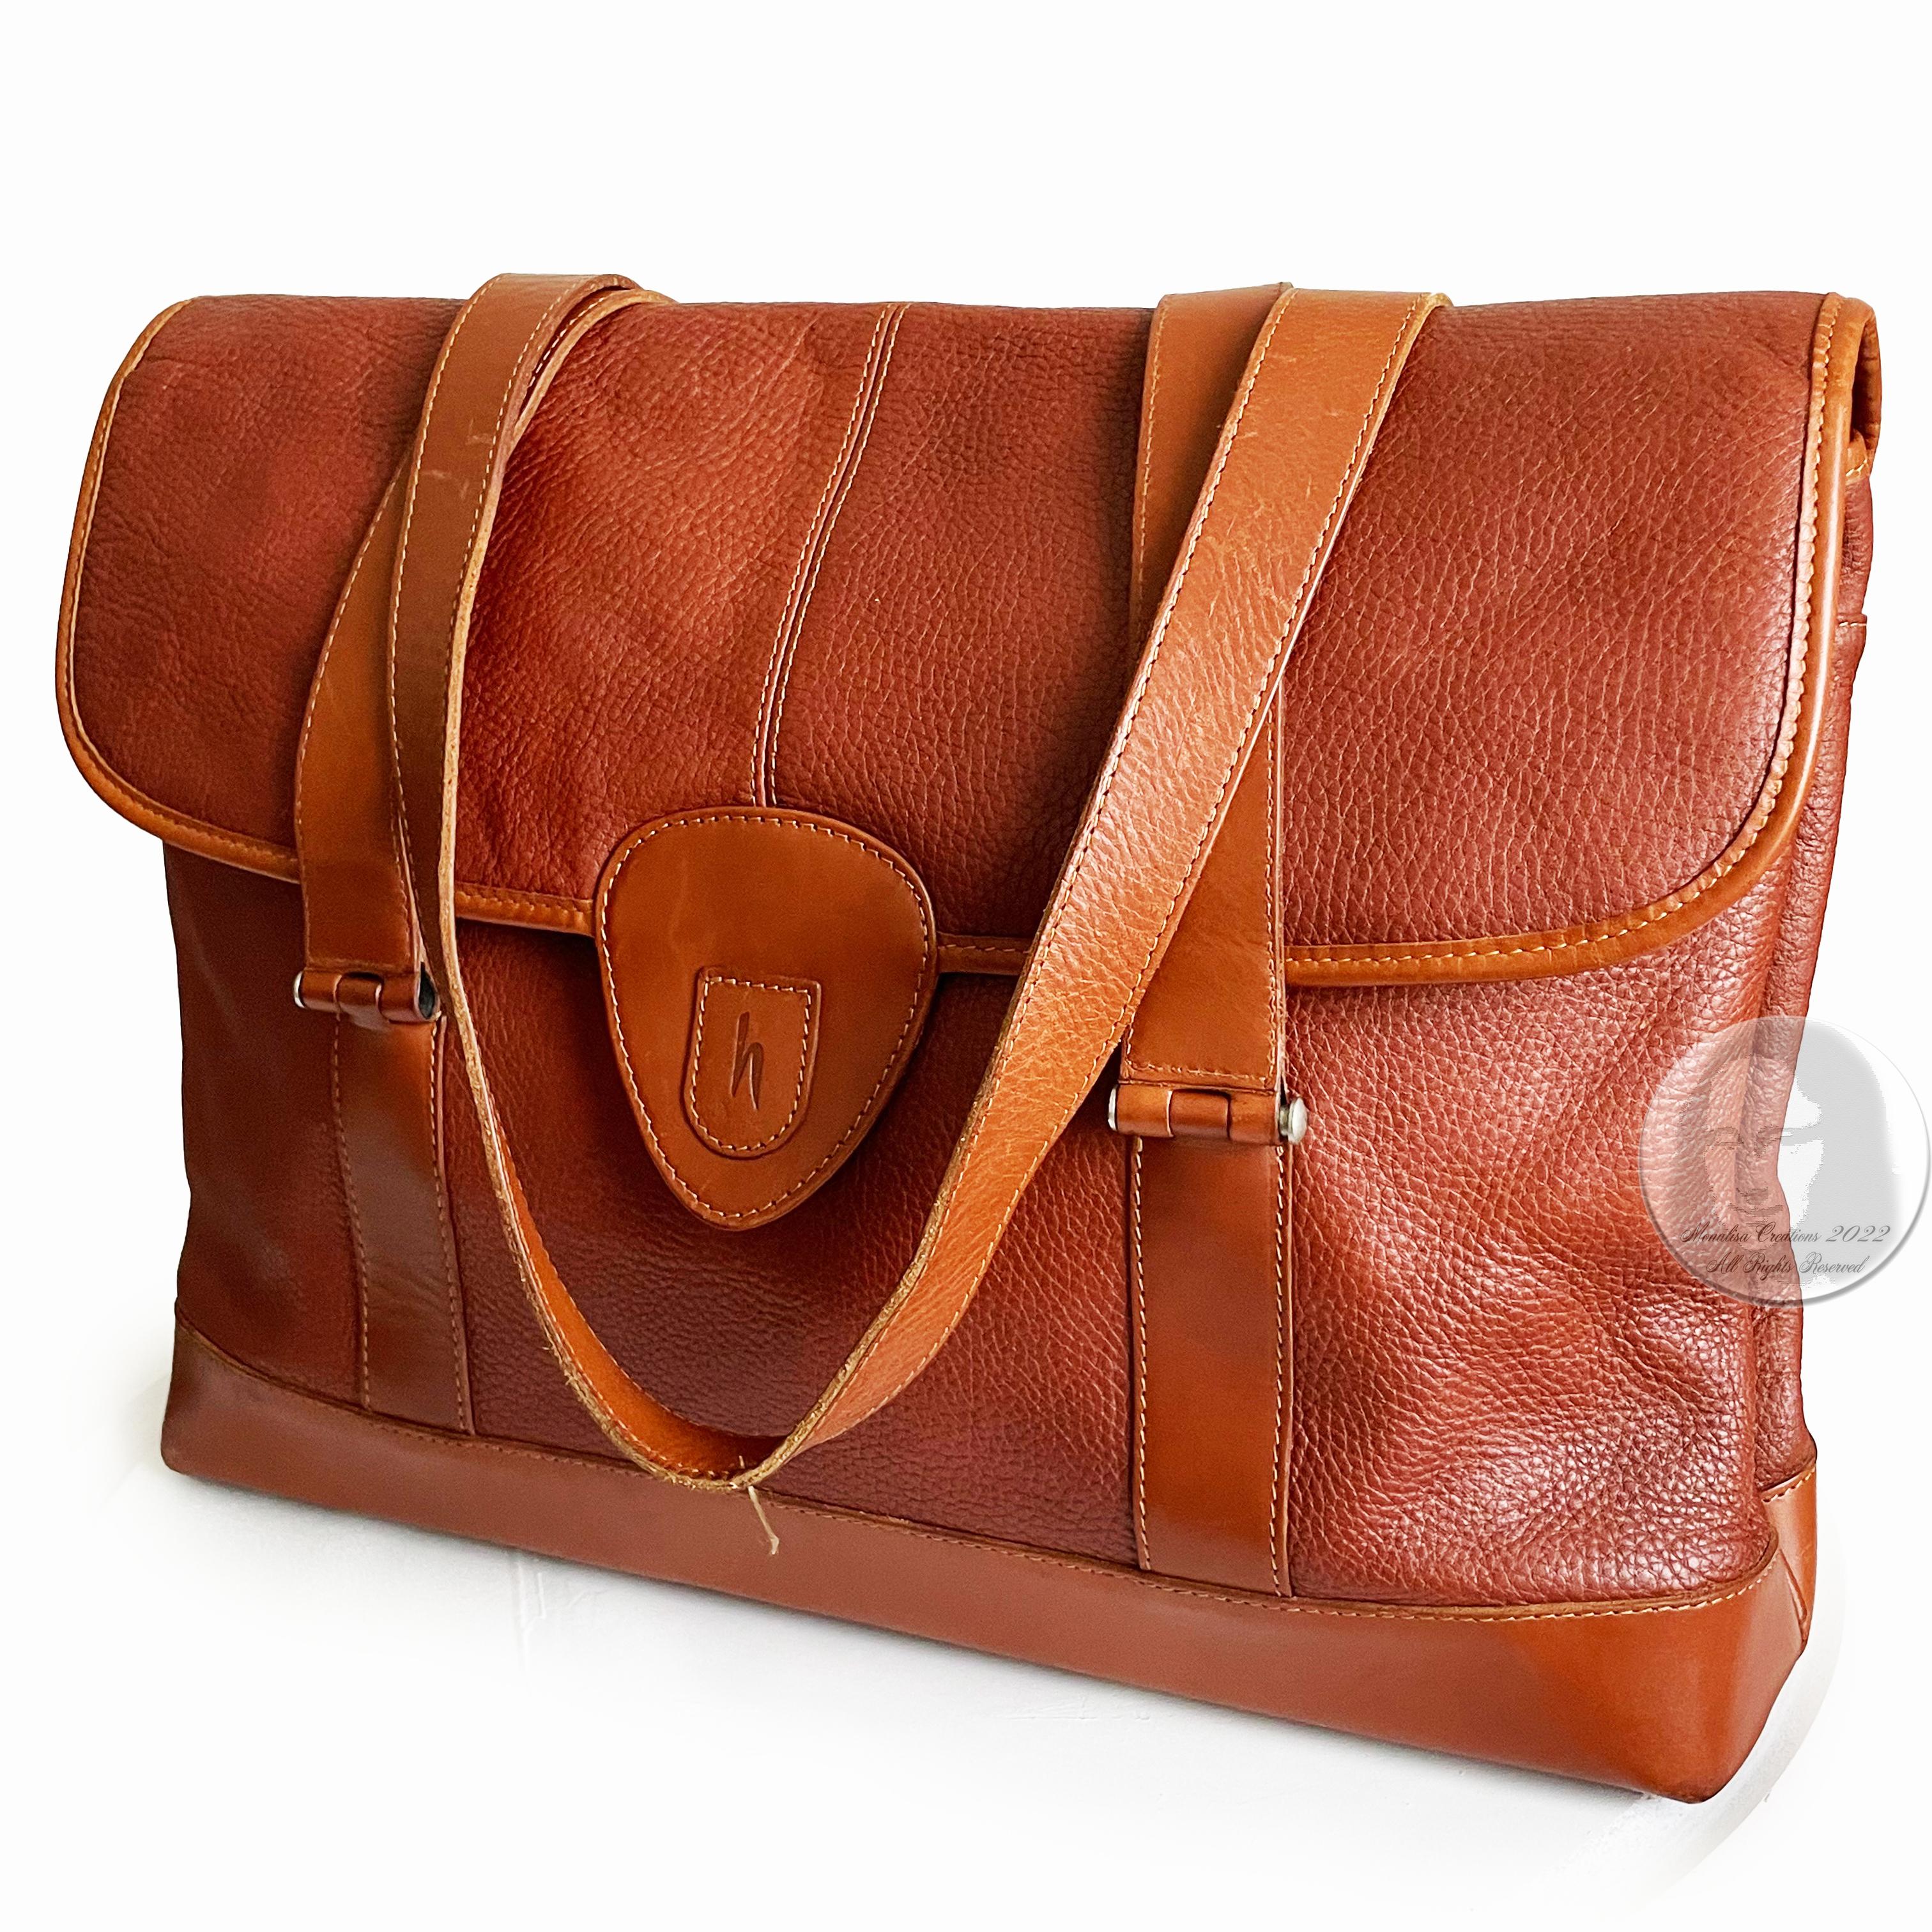 Hartmann Business Bag Briefcase Computer or Shoulder Bag British Tan Leather 2